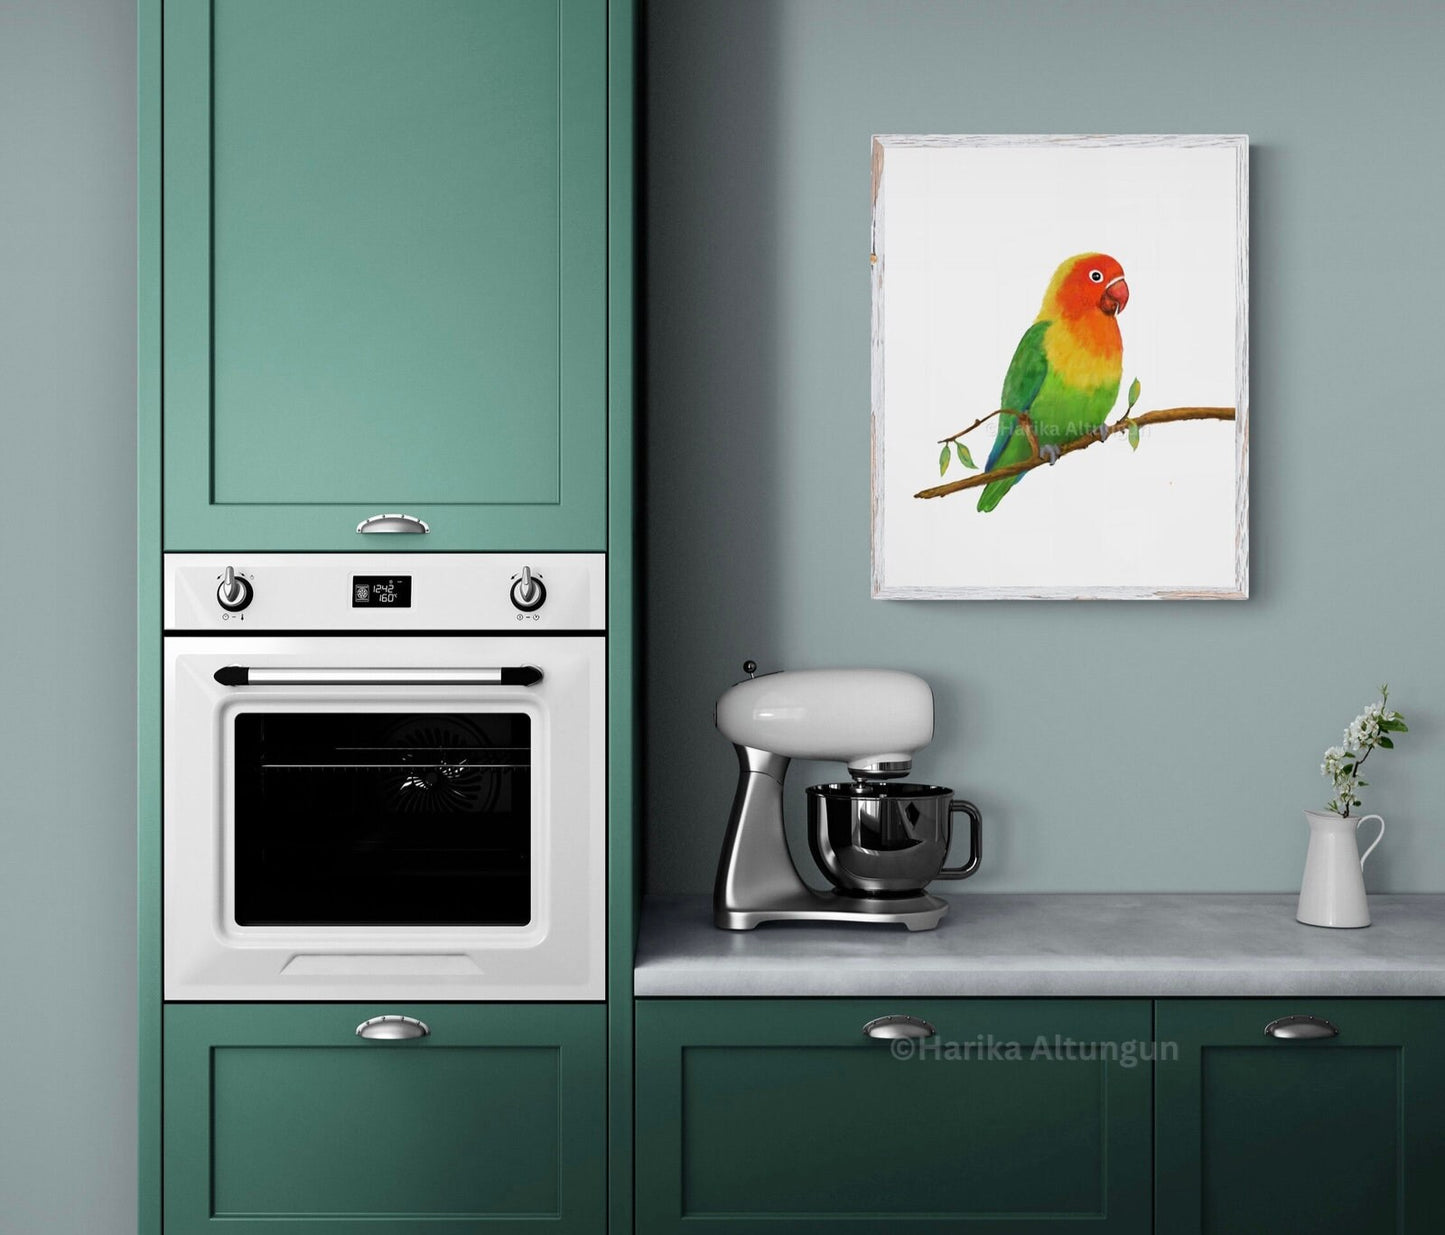 Lovebird on Branch Art, Parrot Painting, Bird Lover Art, Bird Mom Dad Gift, Kitchen Wall Decor, Tropical Bird Memorial, Home Wall Print